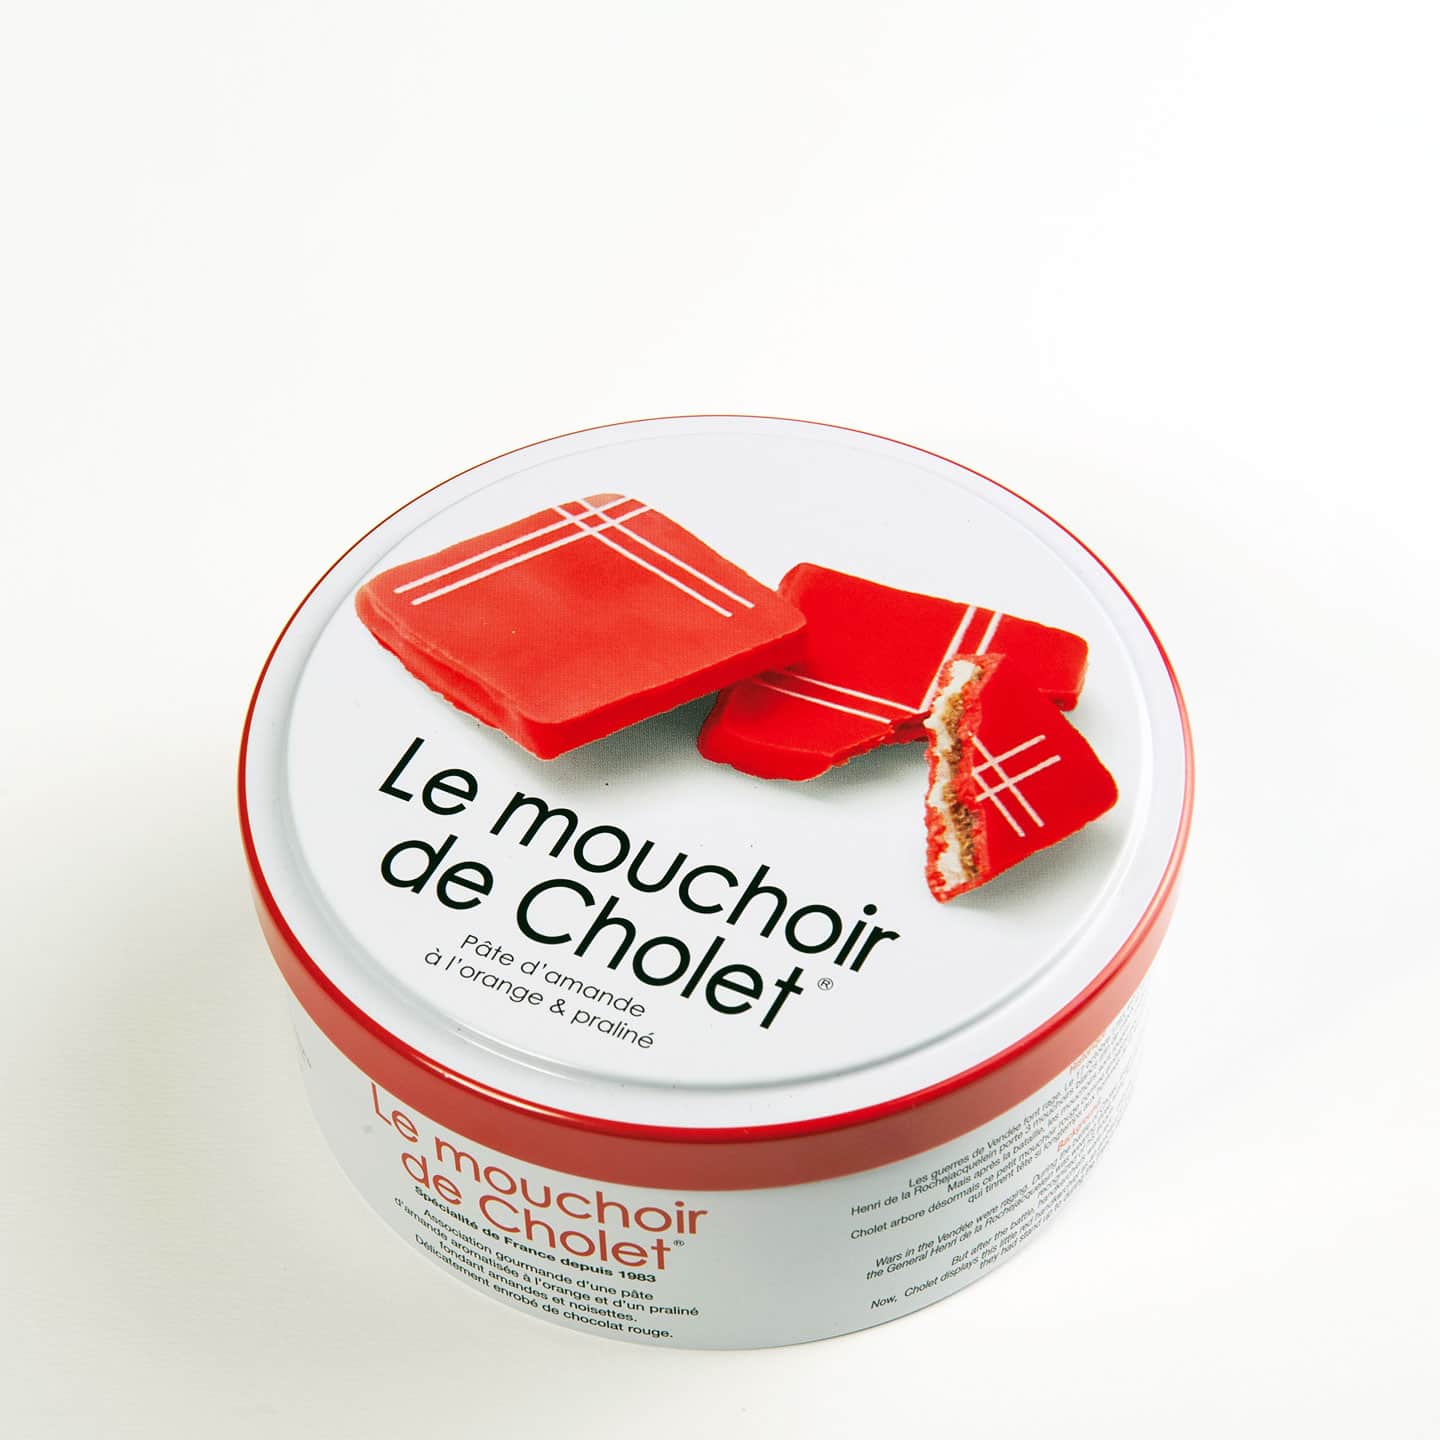 Pâte d’Amandes Orange, Praliné, Chocolat 240g - 29 pièces Mouchoirs de Cholet